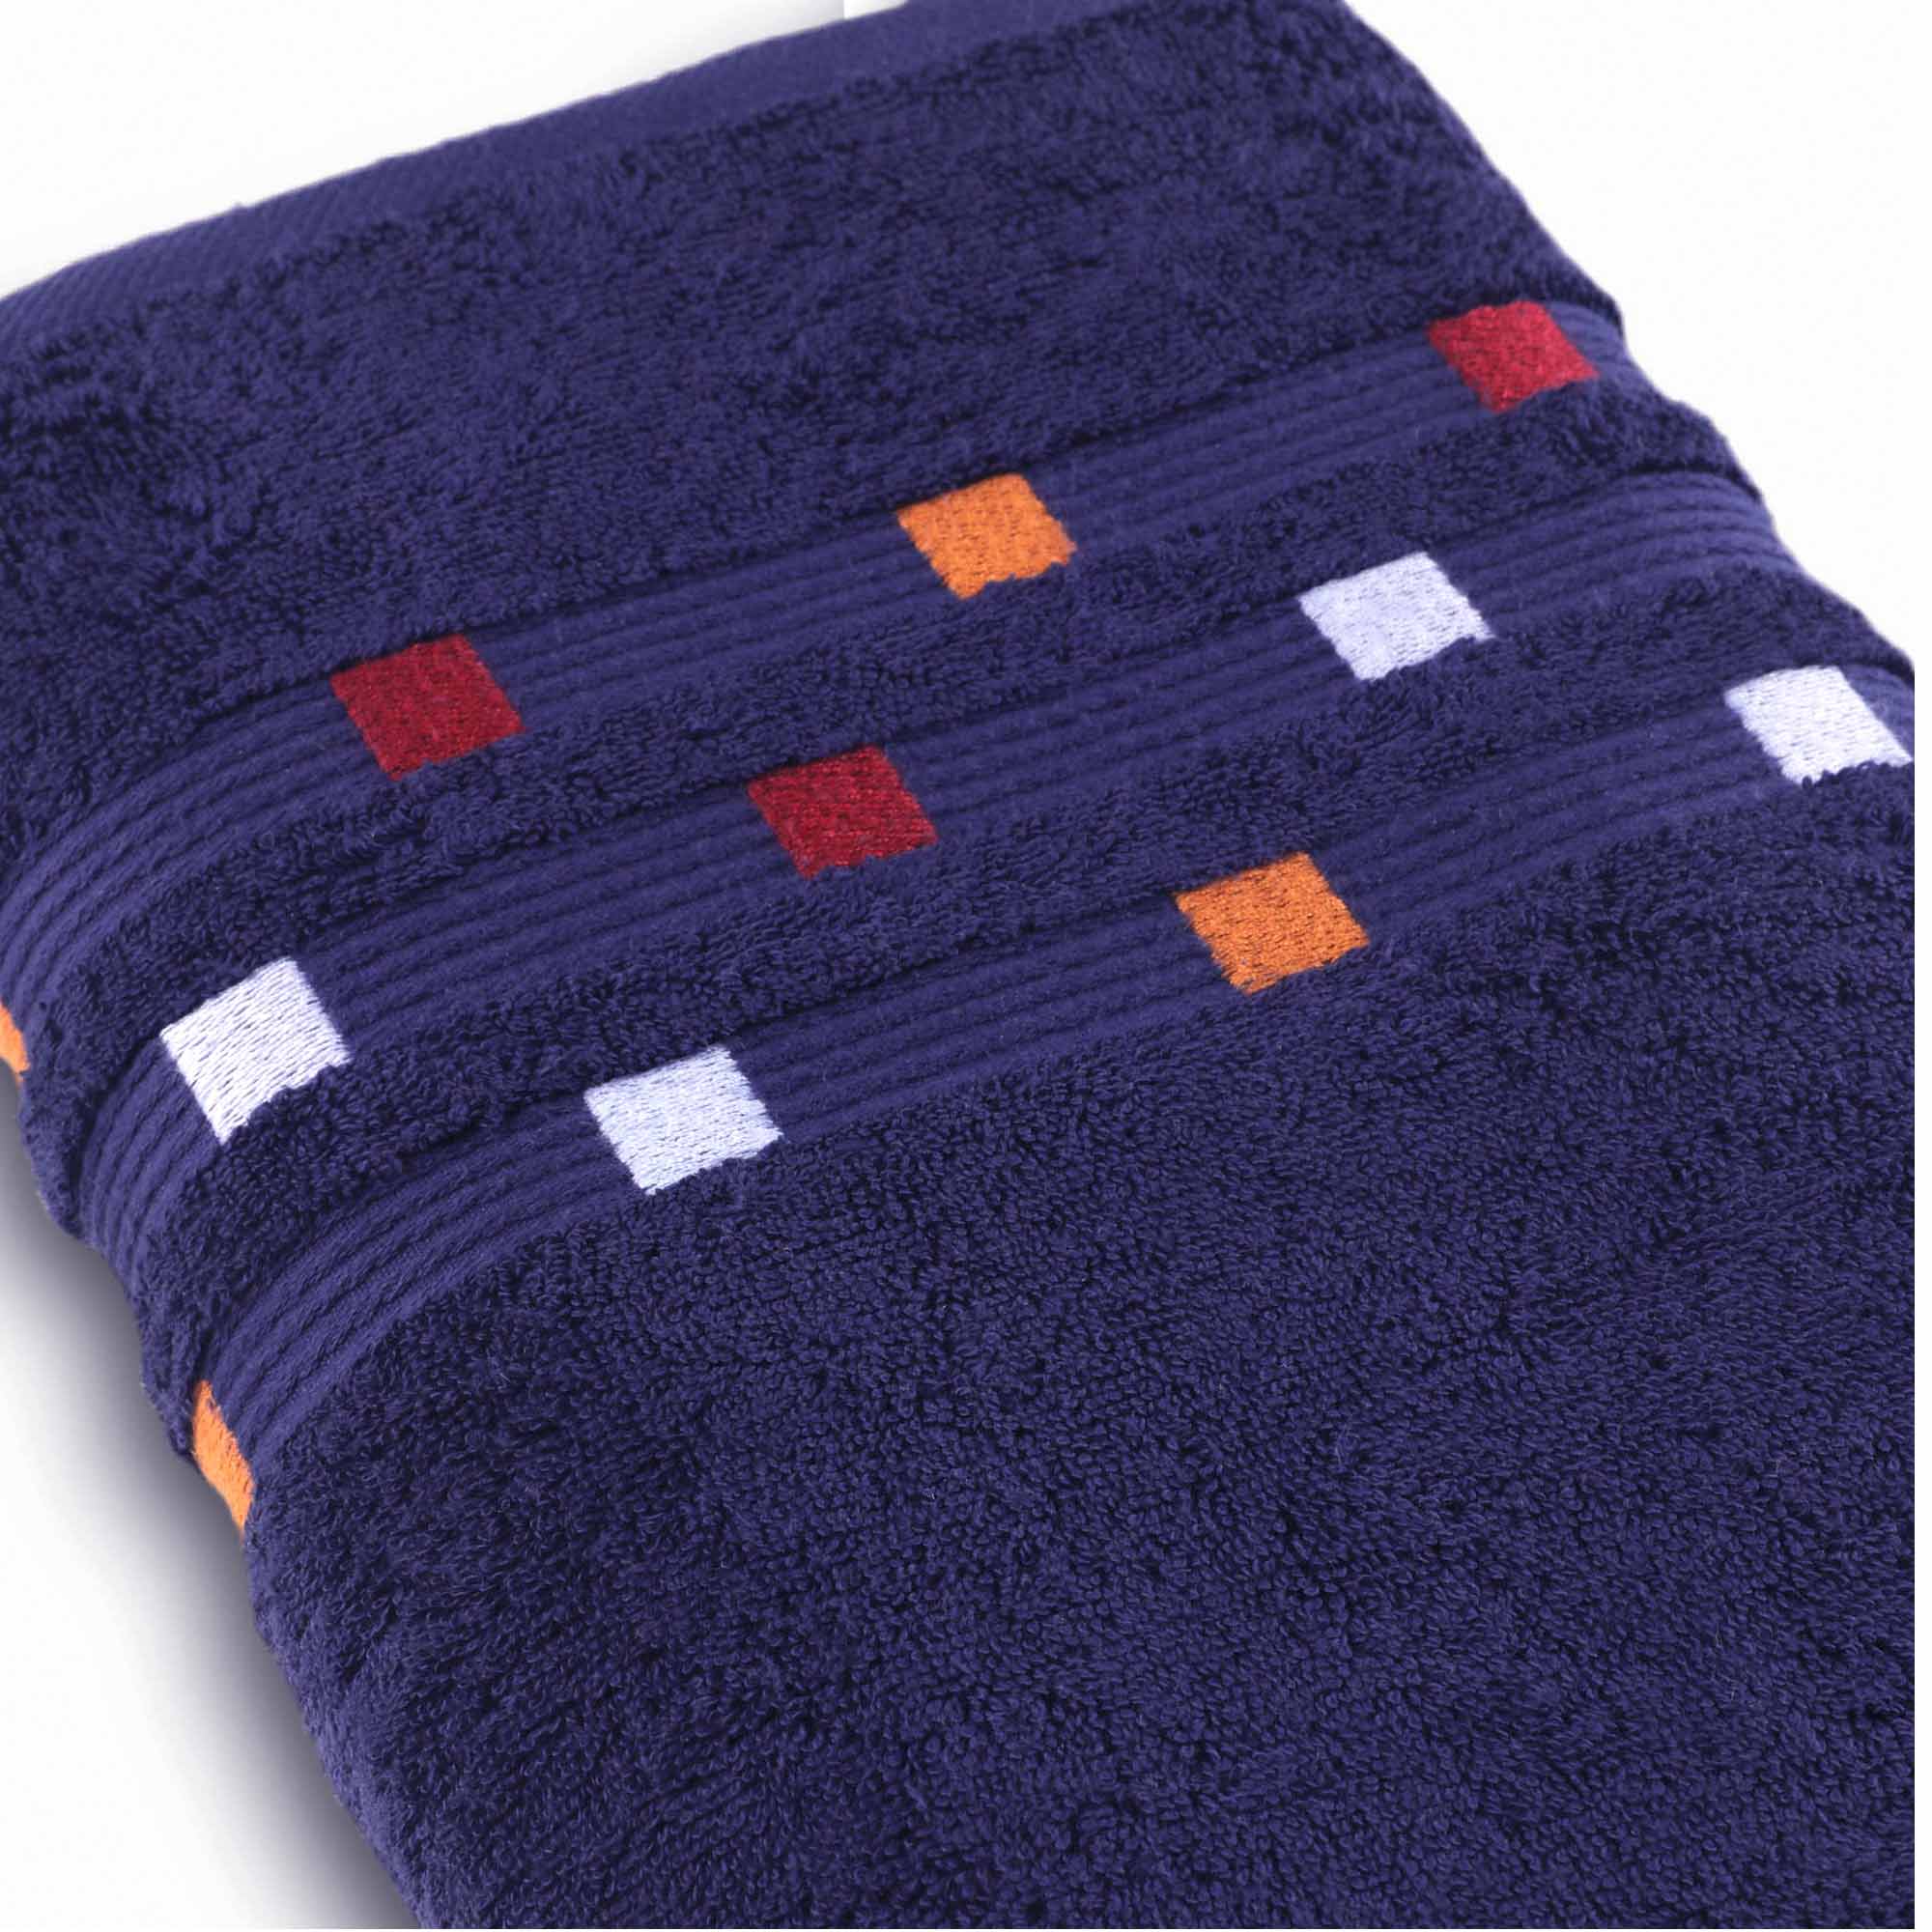 Panache - 6 Piece Towel Set